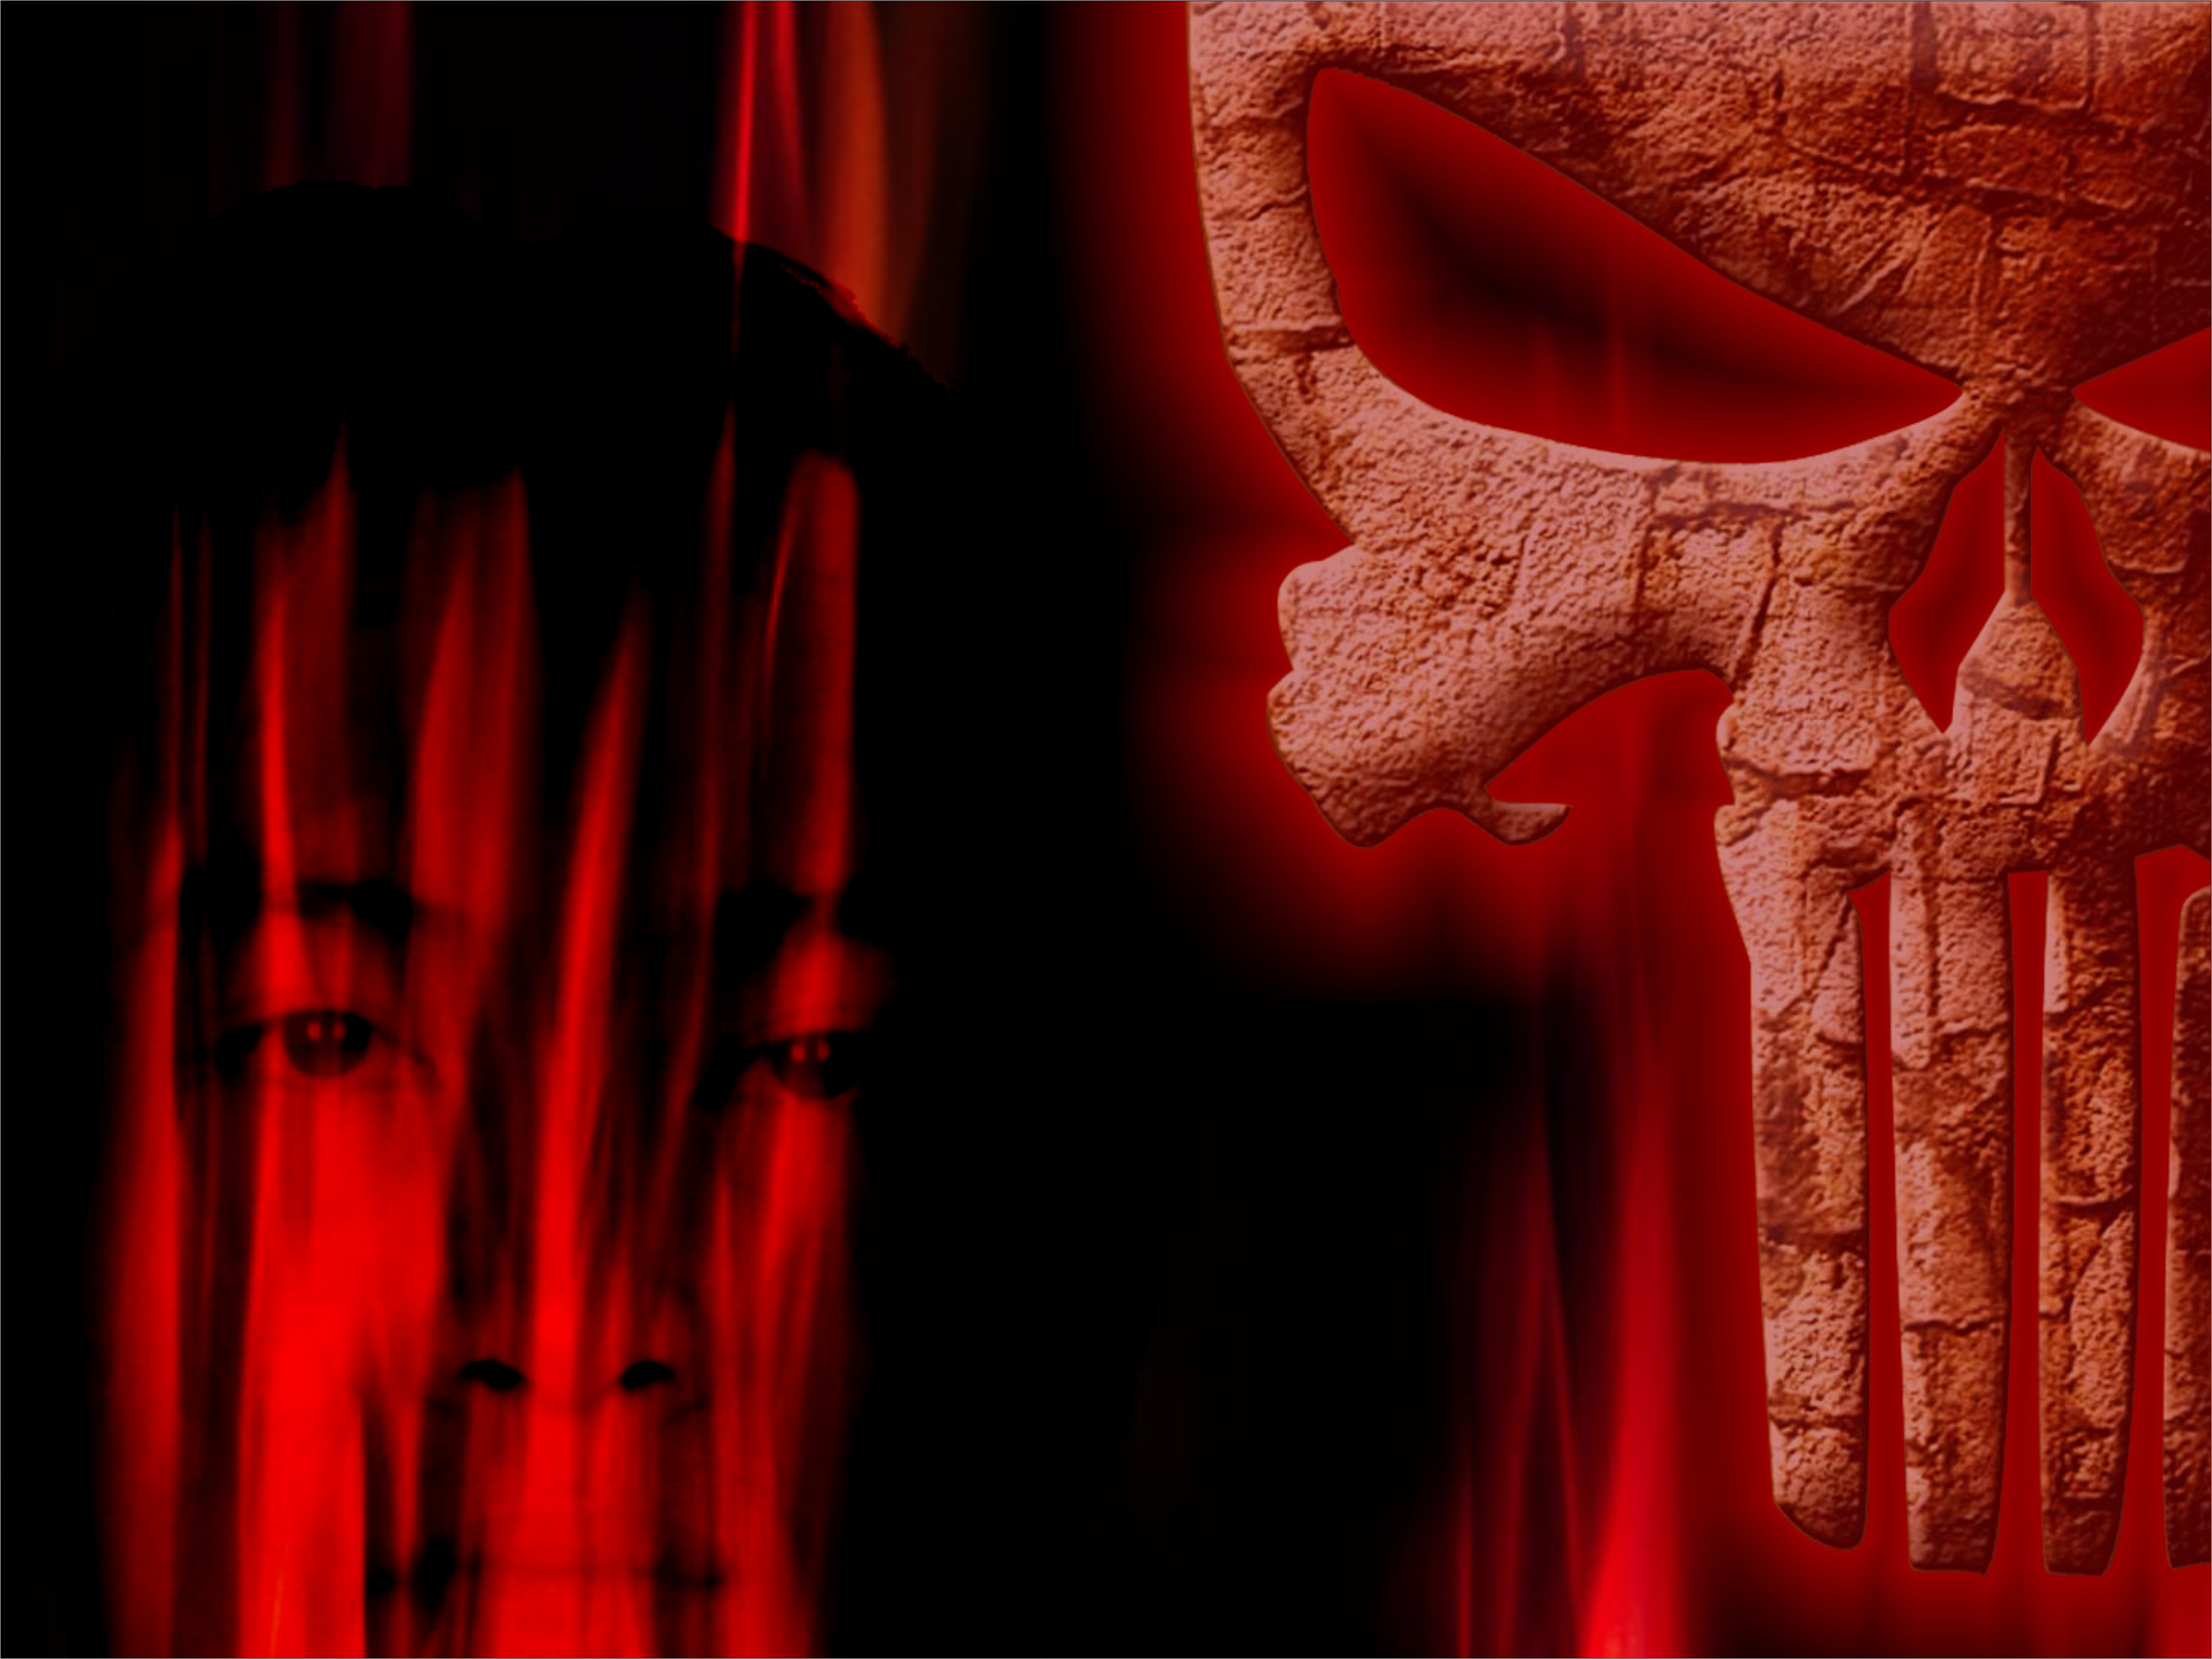 Scary Skulls Wallpaper Red Punisher Skull Source Http Www